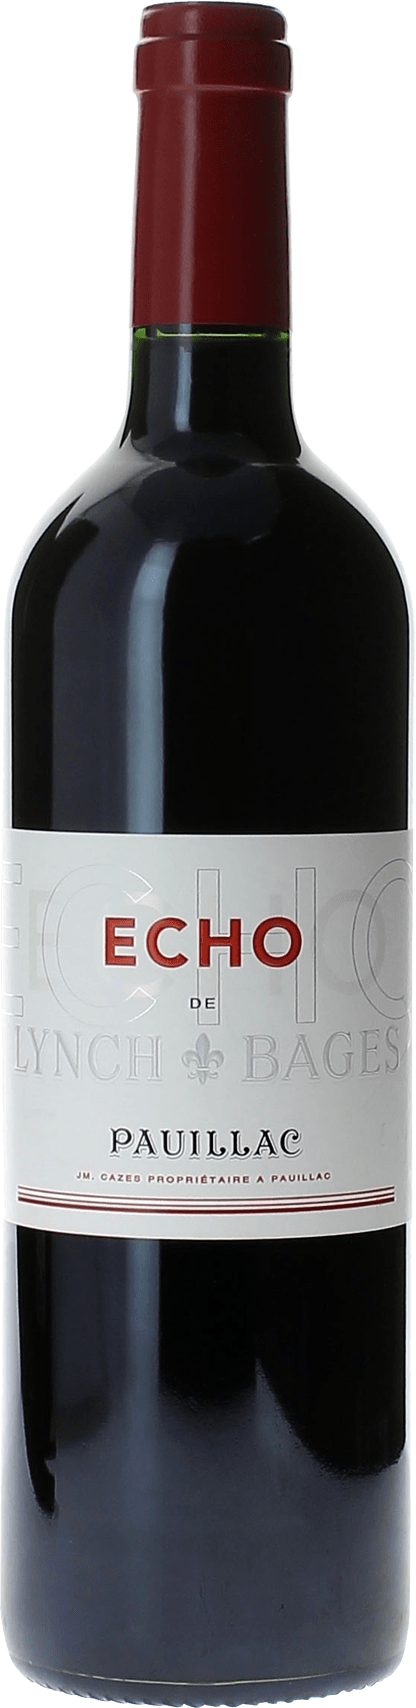 Echo lynch bages 2015 2me vin de LYNCH BAGES Pauillac, Bordeaux rouge